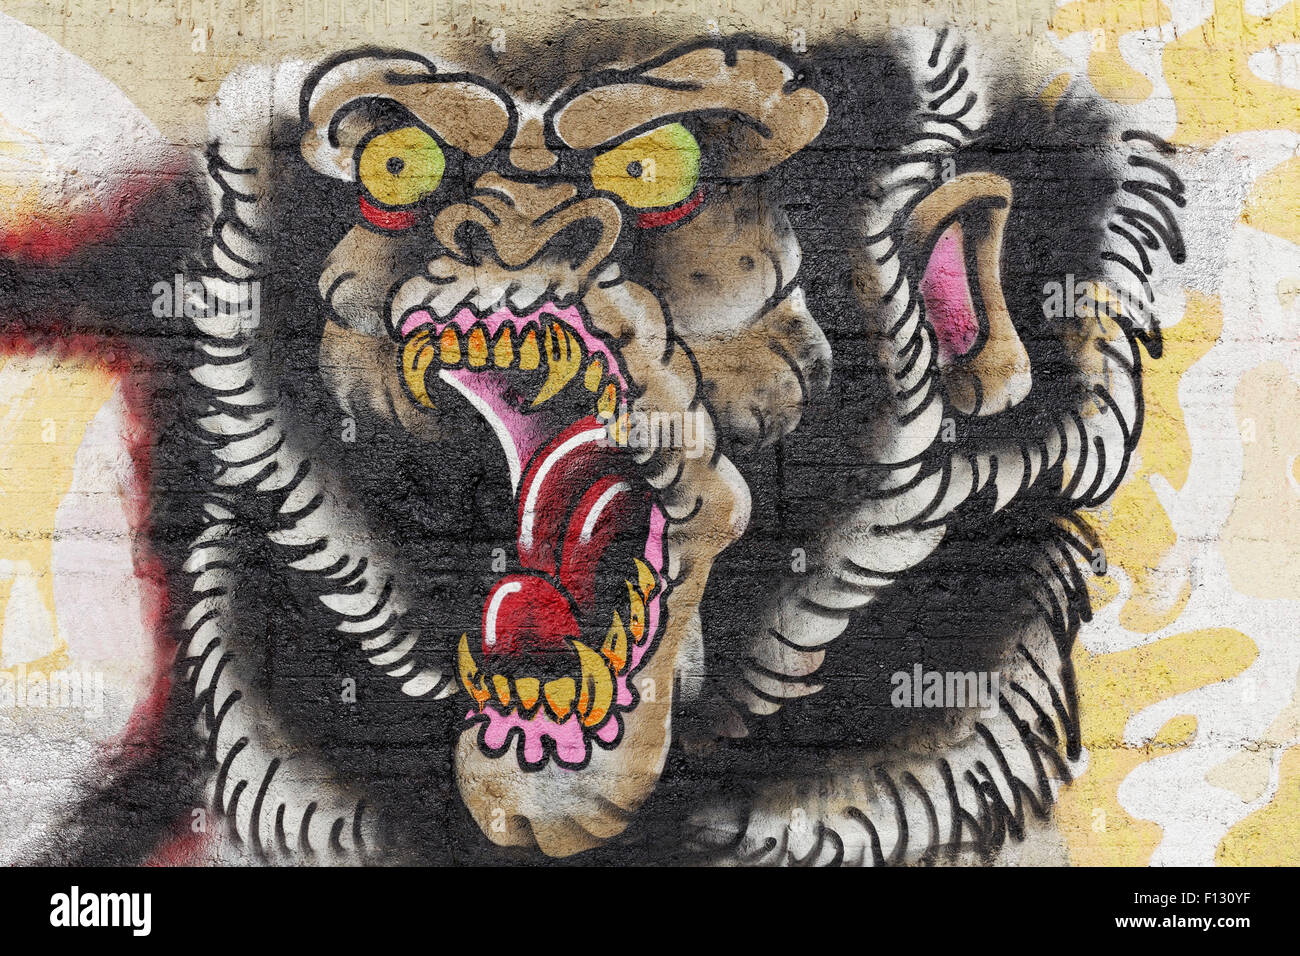 Un gorille géant avec la bouche ouverte, Monster, graffiti, street art, Duisbourg, Rhénanie du Nord-Westphalie, Allemagne Banque D'Images